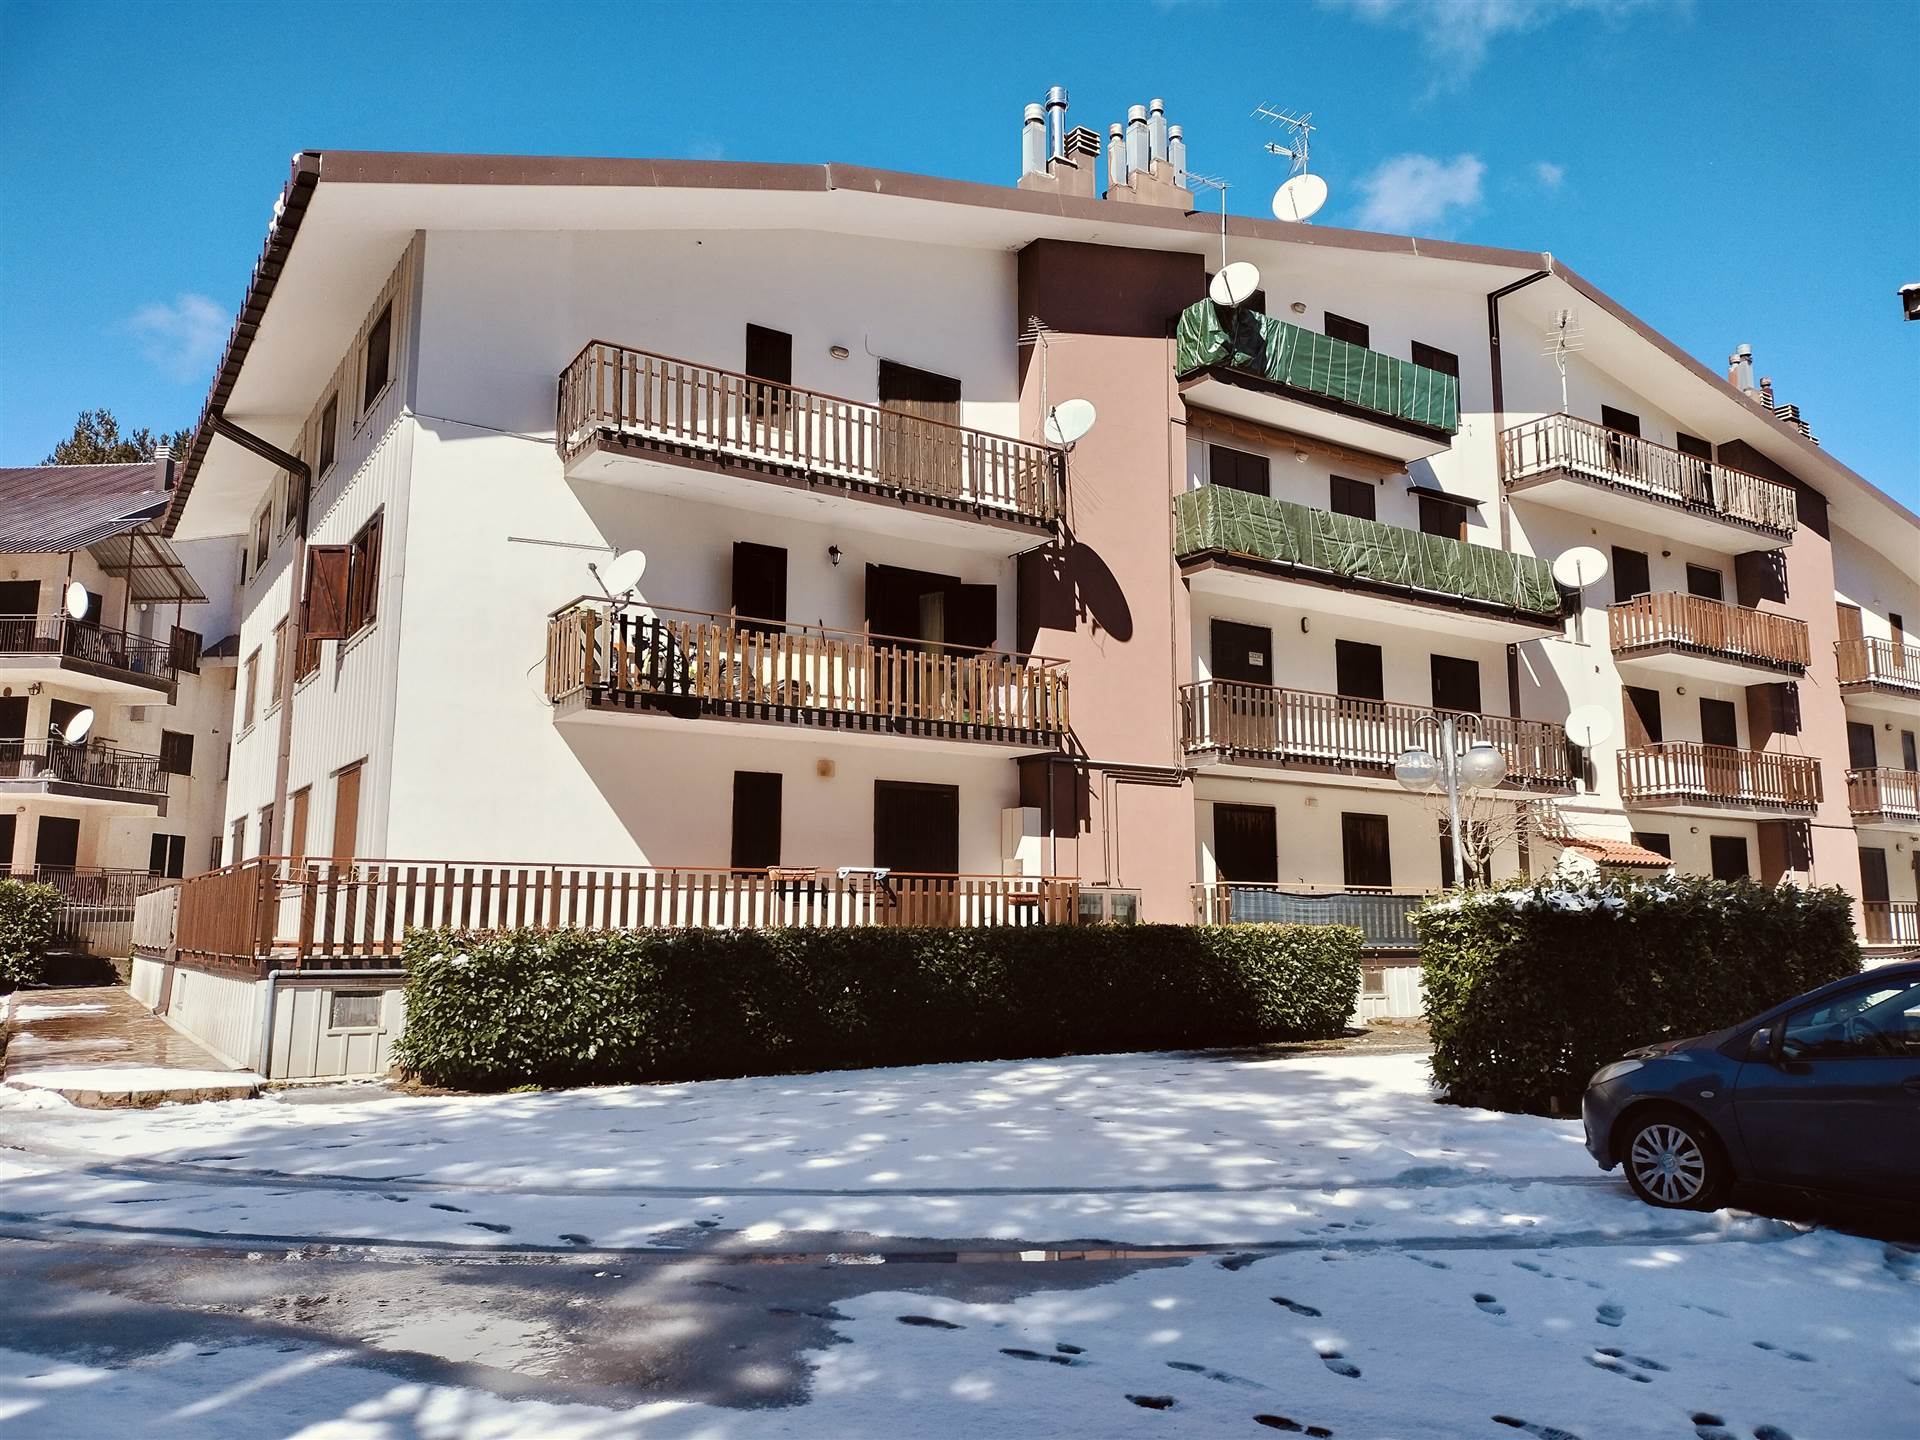 Appartamento in vendita a Spezzano della Sila, 3 locali, zona one, prezzo € 50.000 | PortaleAgenzieImmobiliari.it